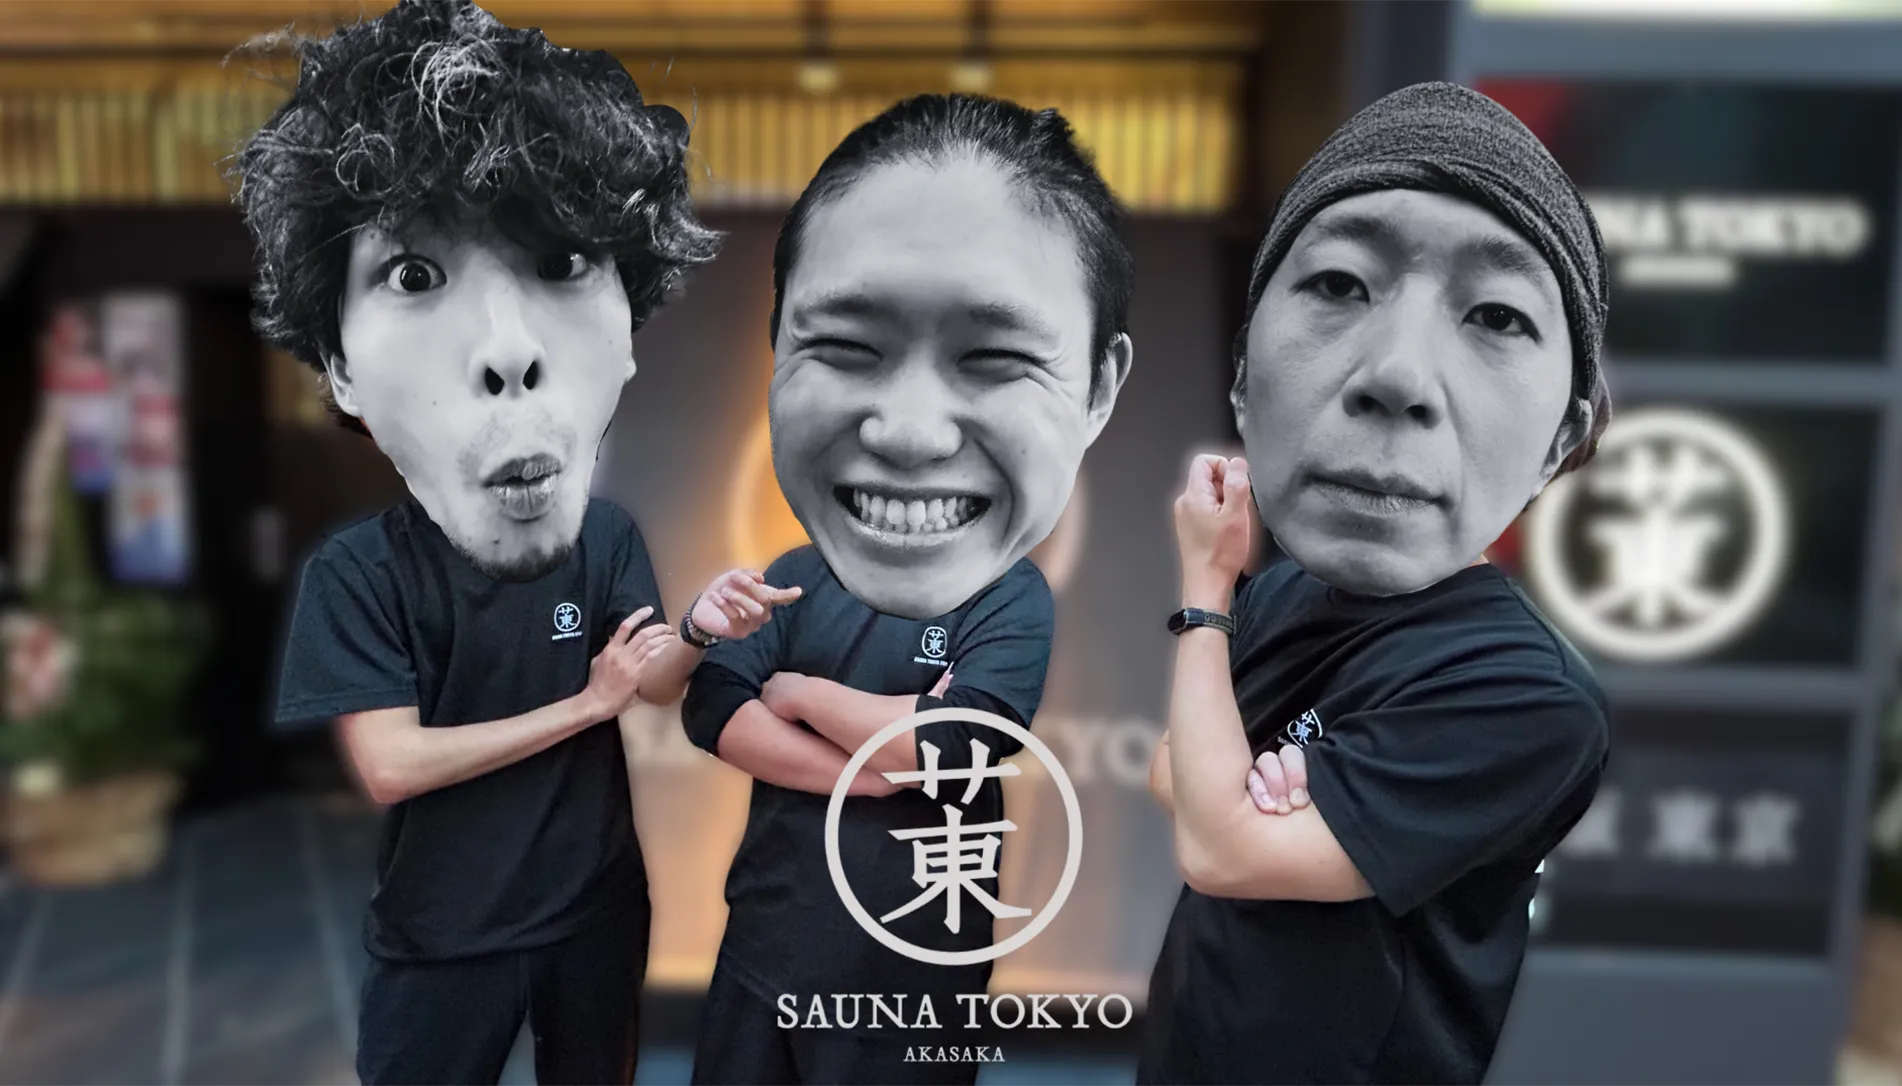 Sauna Tokyo Aufguss Dreams